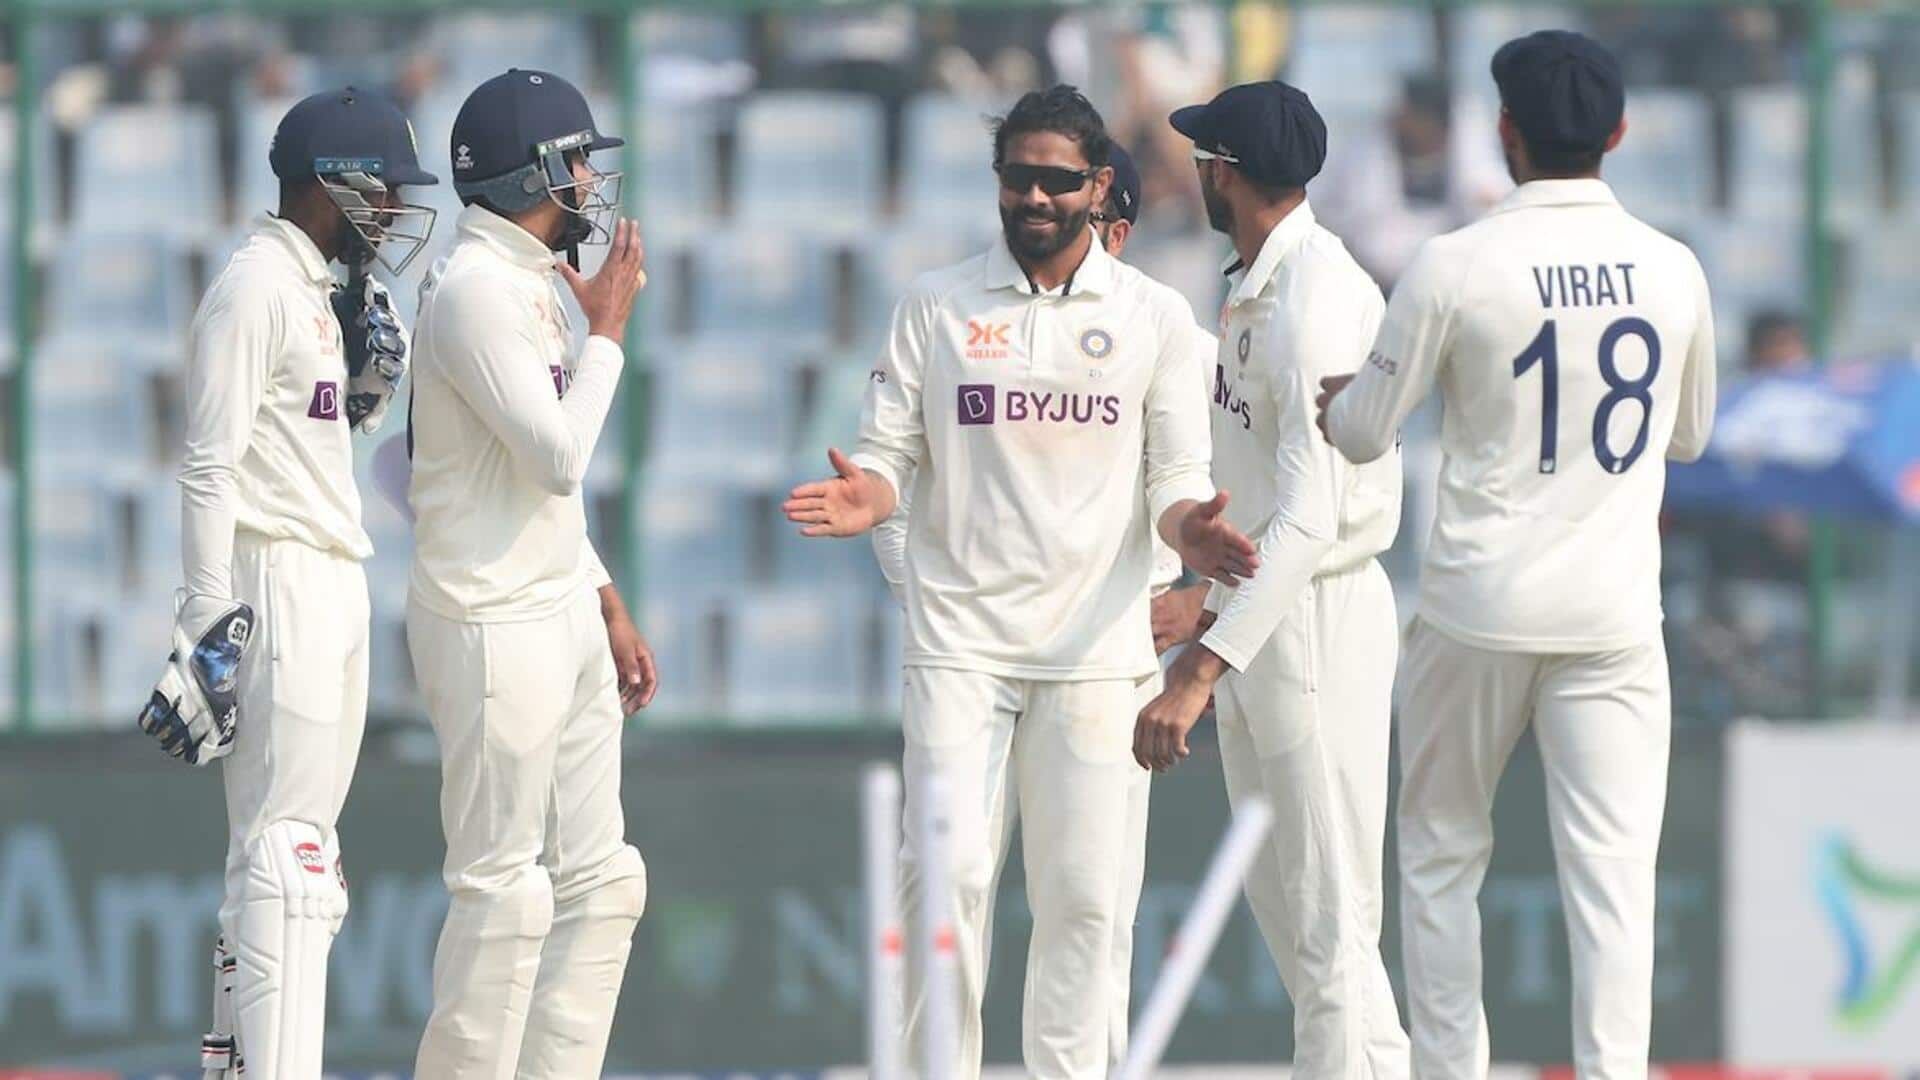 तीसरा टेस्ट: ऑस्ट्रेलिया के खिलाफ भारत ने टॉस जीतकर चुनी बल्लेबाजी, दावं पर होंगे ये रिकॉर्ड्स 